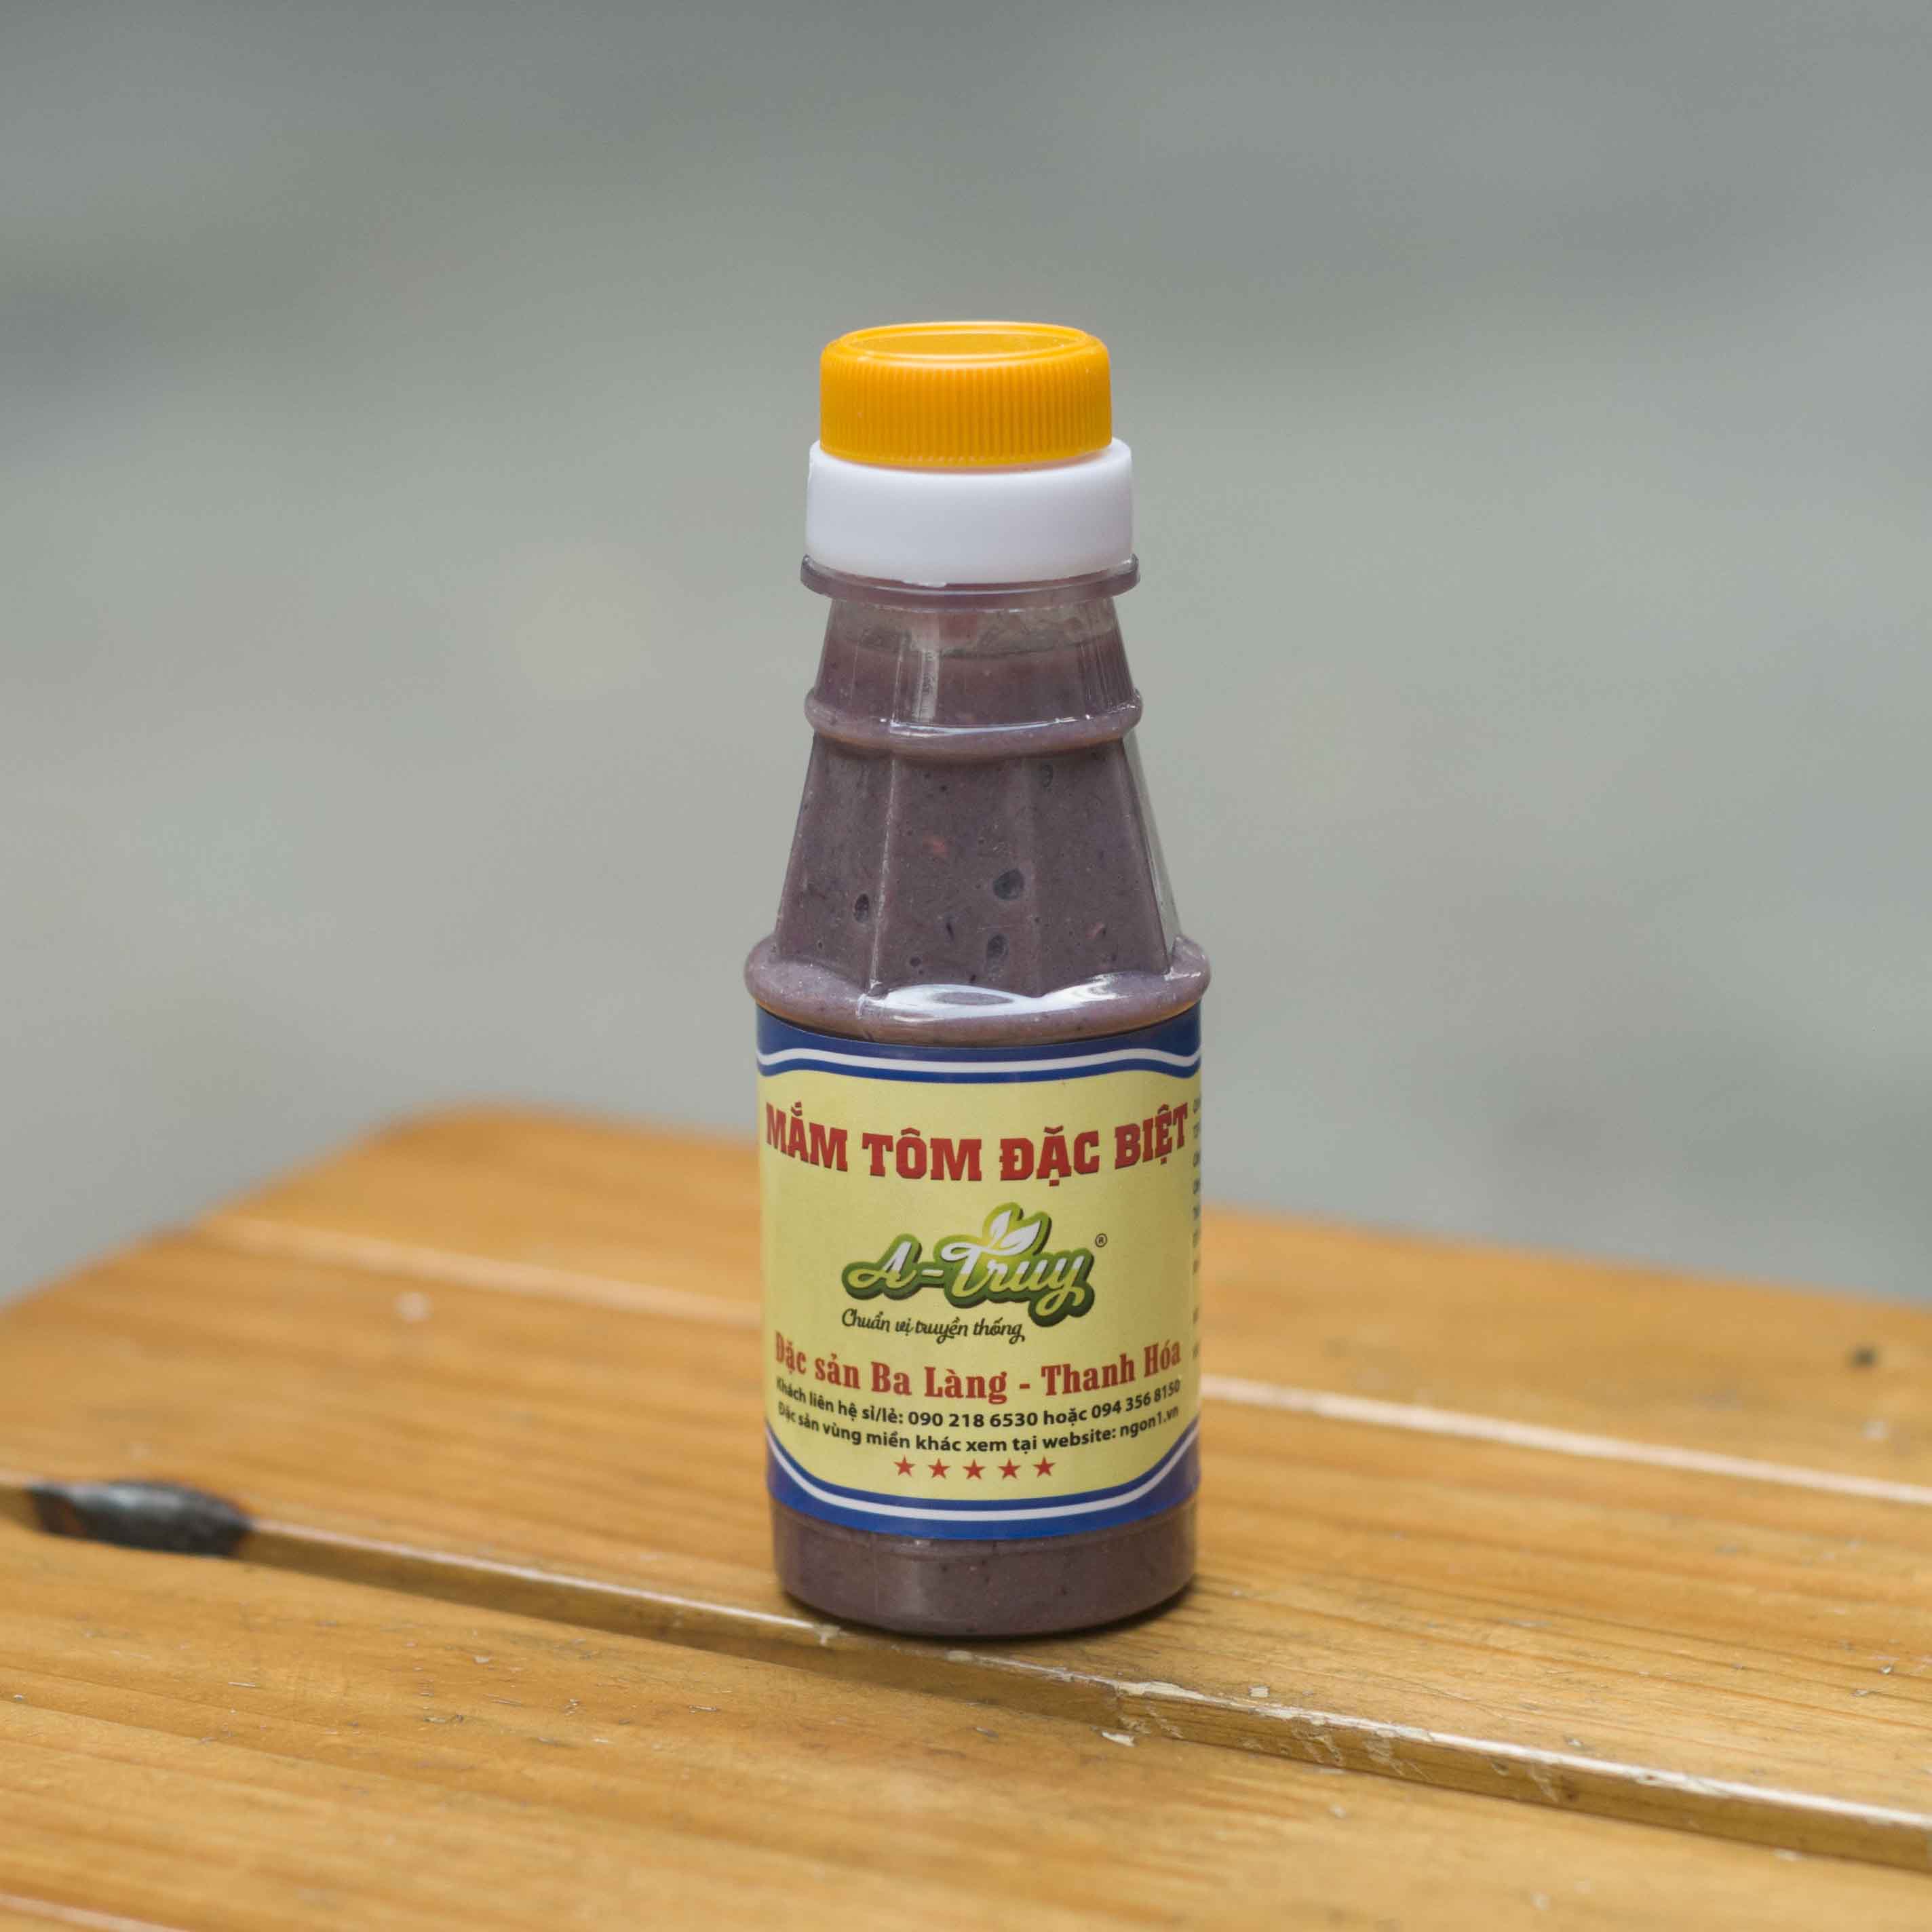 Mắm tôm đặc biệt A-Truy đặc sản Ba làng - Thanh Hóa (chai nhỏ 120g)